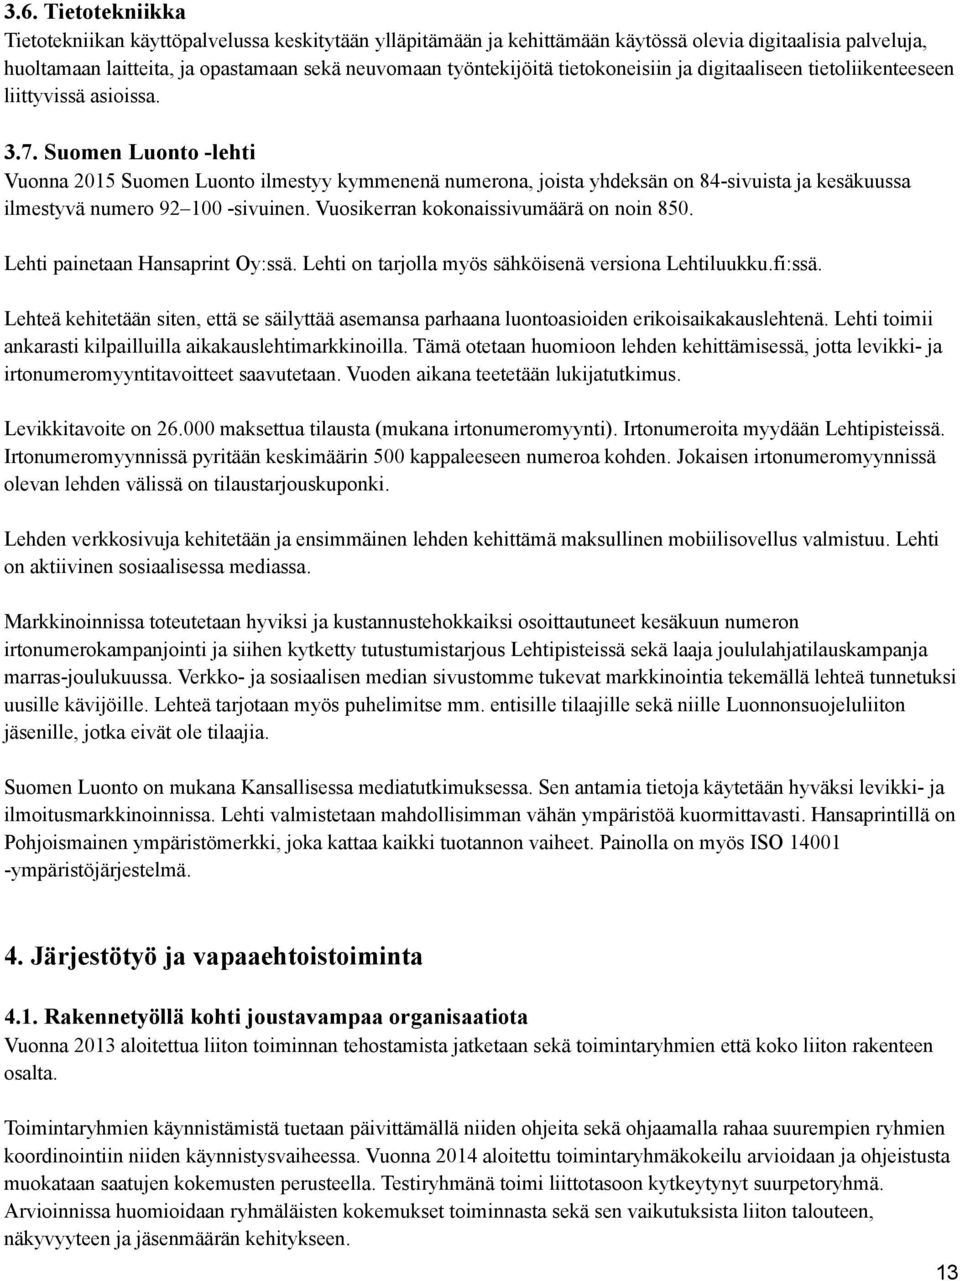 Suomen Luonto -lehti Vuonna 2015 Suomen Luonto ilmestyy kymmenenä numerona, joista yhdeksän on 84-sivuista ja kesäkuussa ilmestyvä numero 92 100 -sivuinen. Vuosikerran kokonaissivumäärä on noin 850.